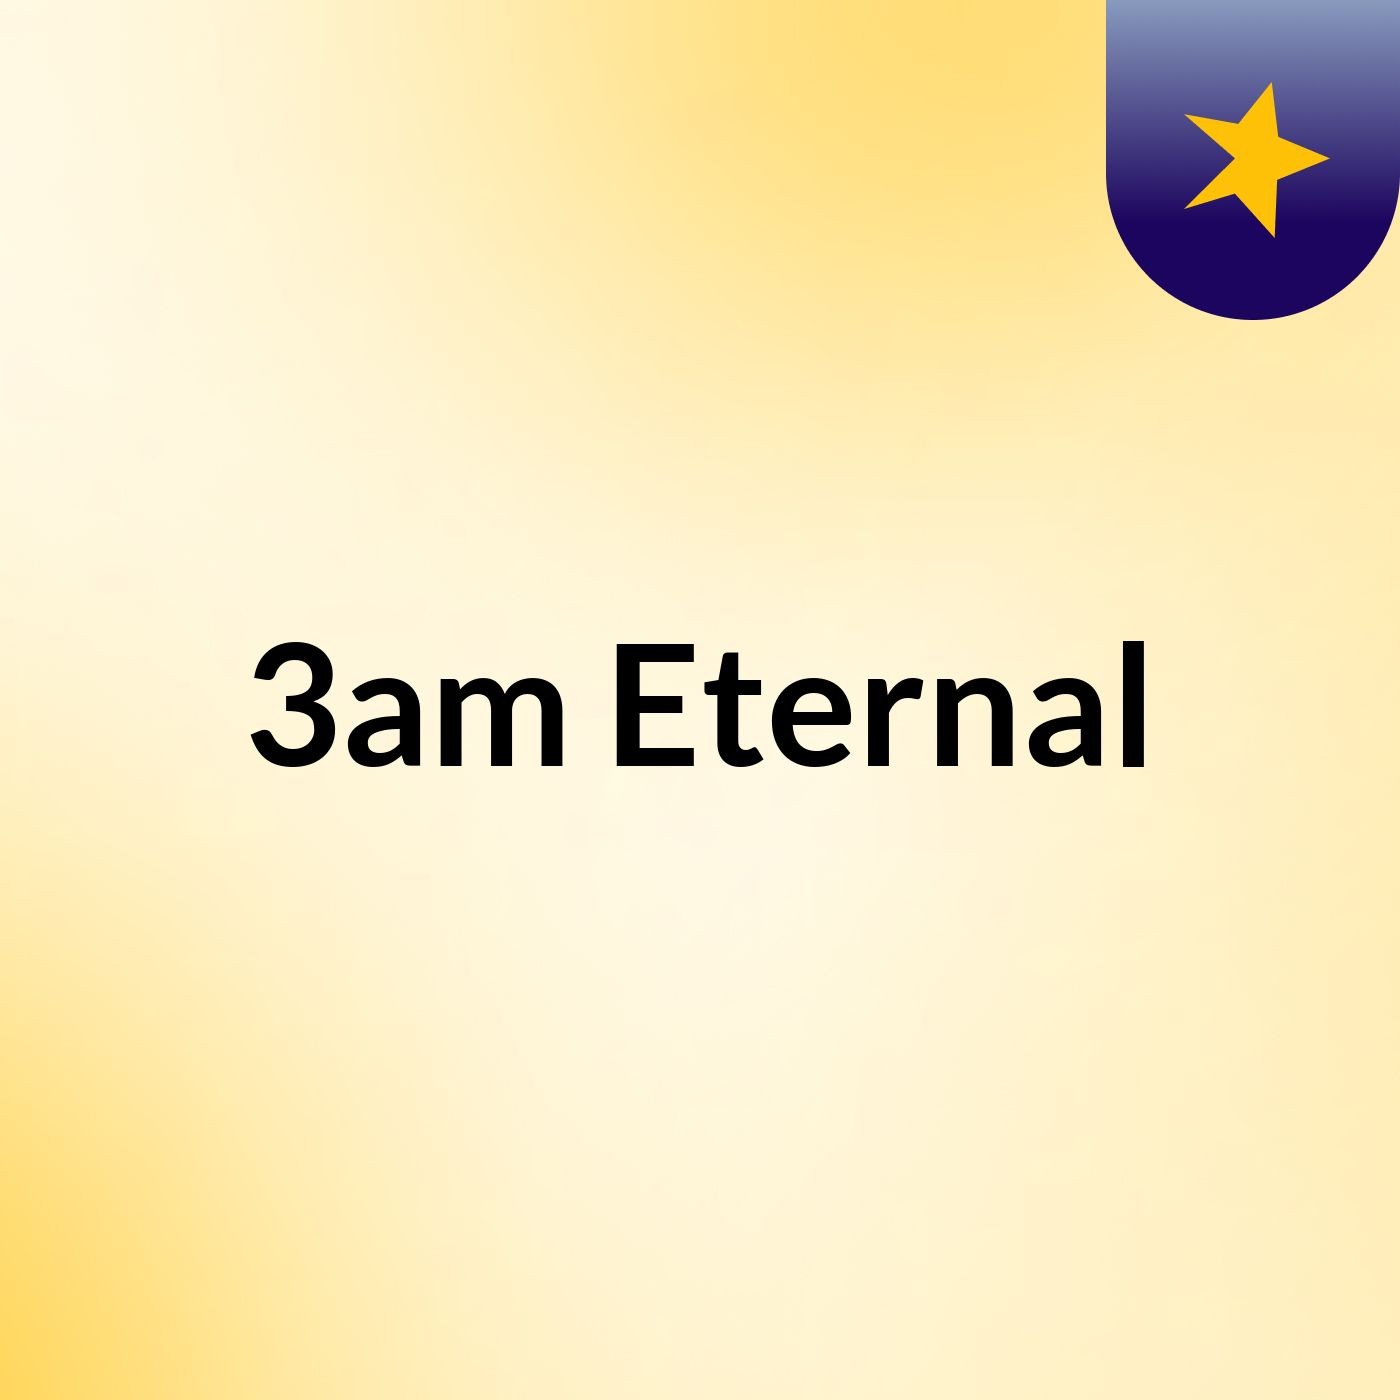 3am Eternal